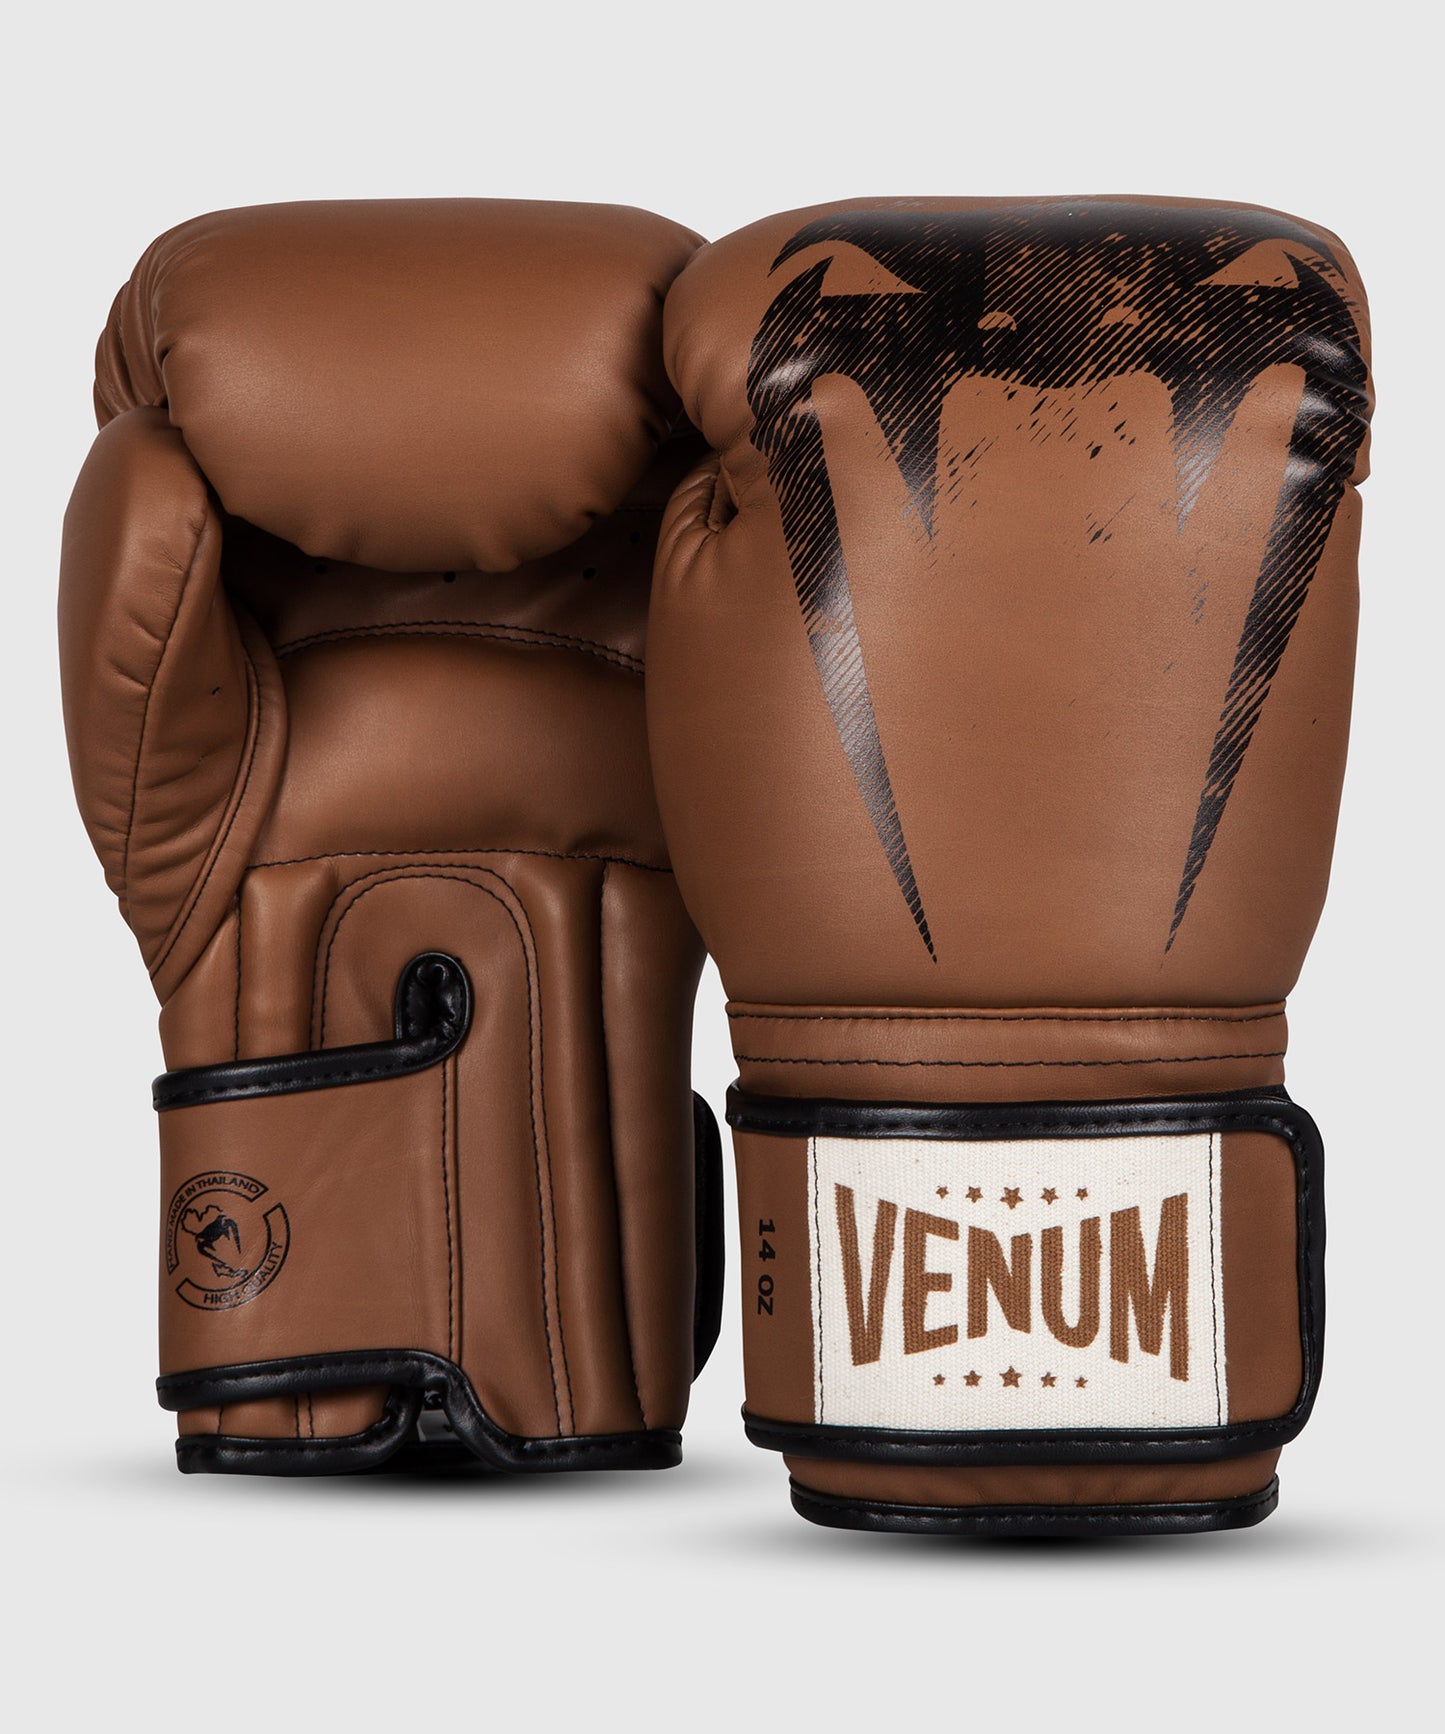 Venum Giant Sparring Boxing Gloves - Brown - Gants de boxe